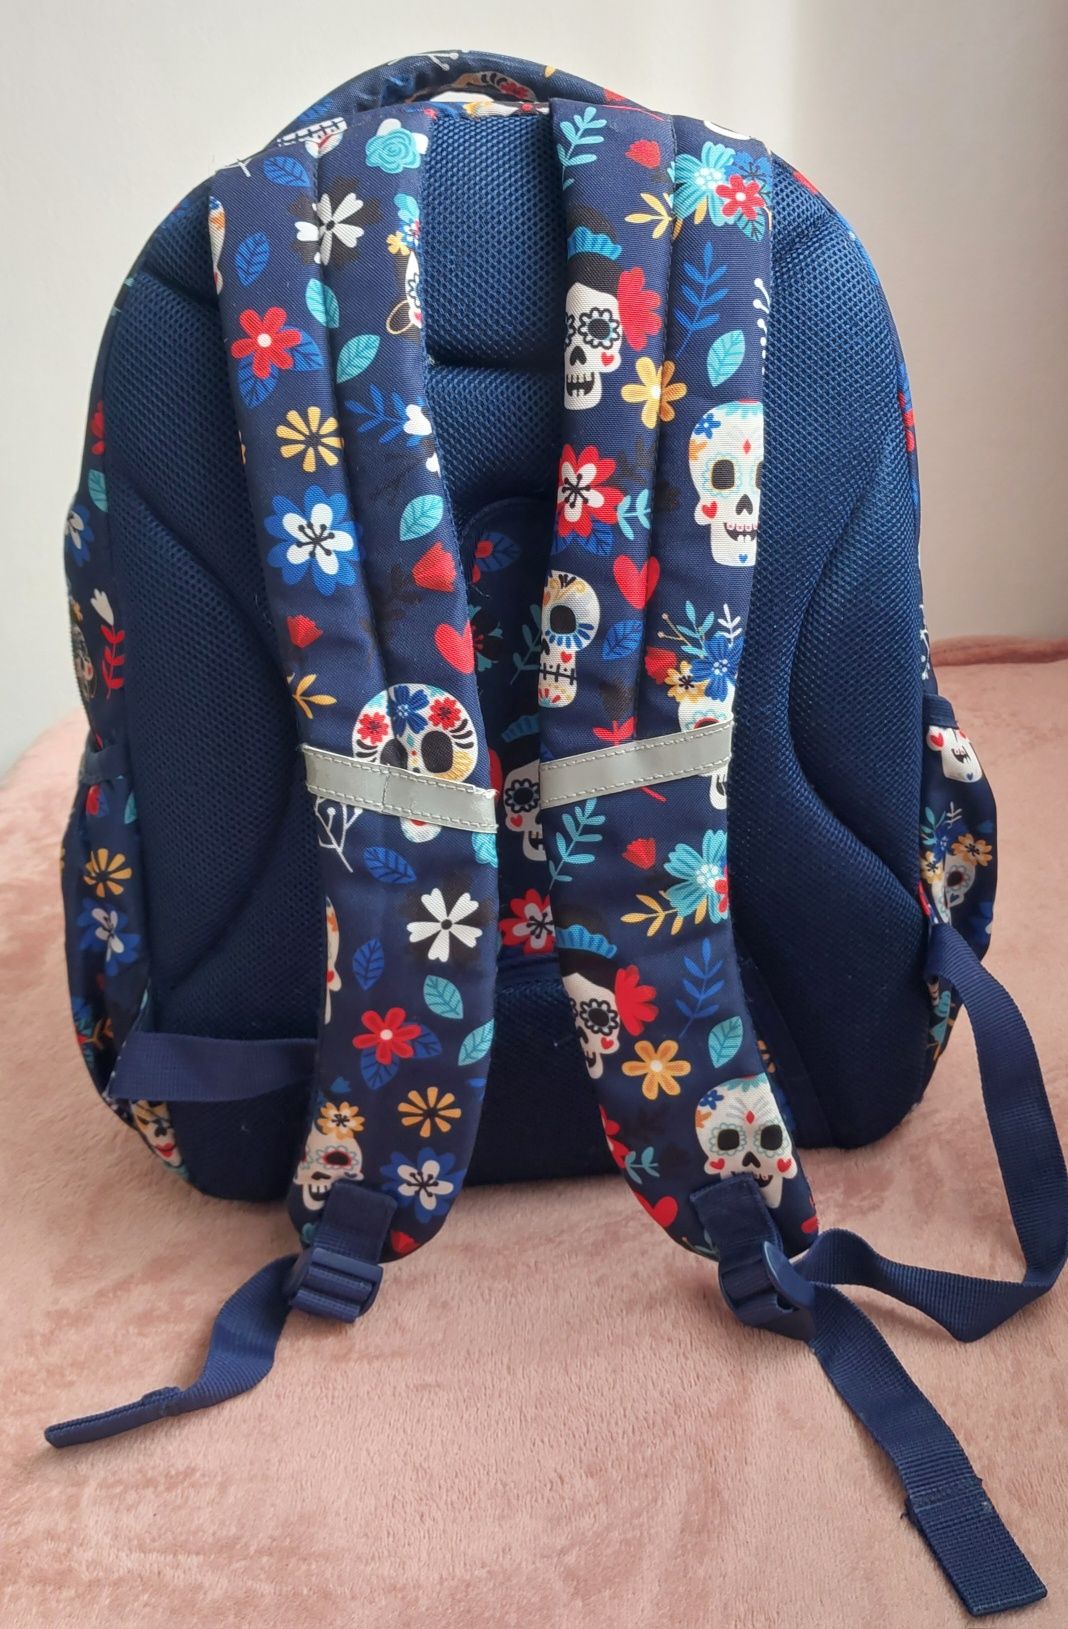 Plecak szkolny dla dziecka